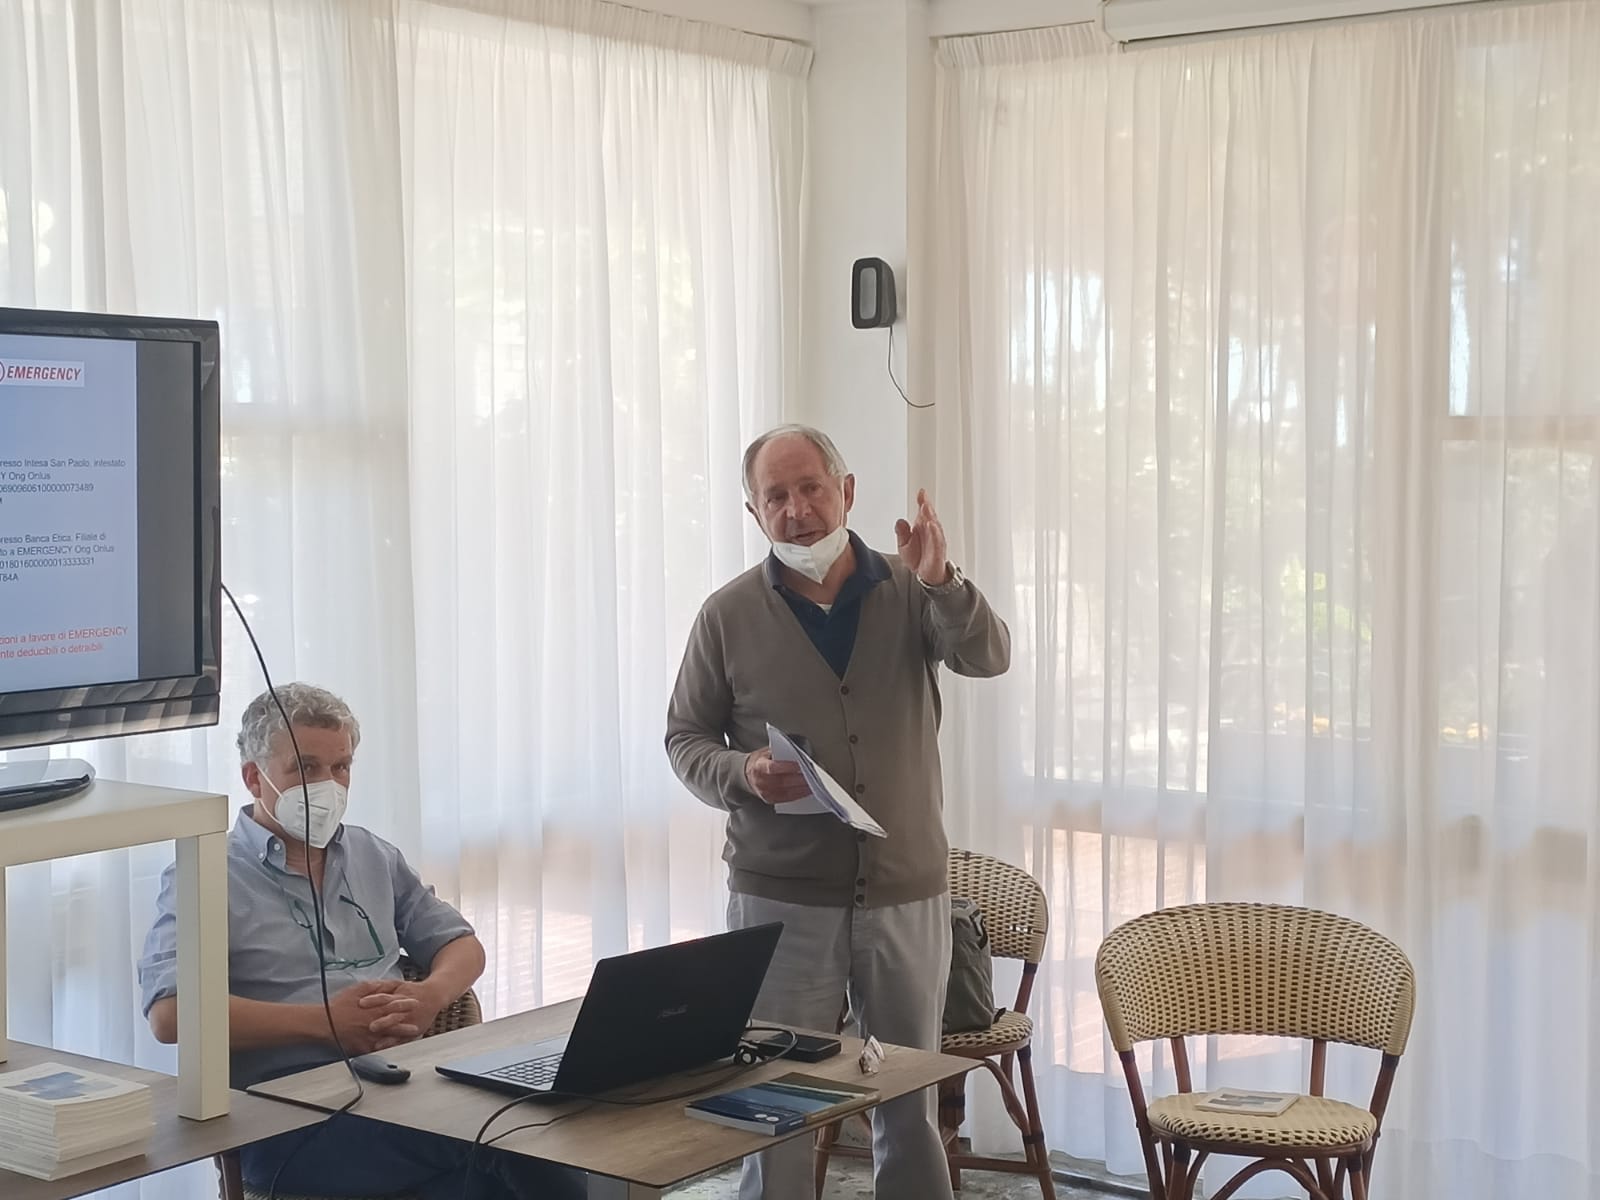 Alba Adriatica, riflessioni e perplessità sulle opere anti-erosione nell’incontro con il professor Pranzini